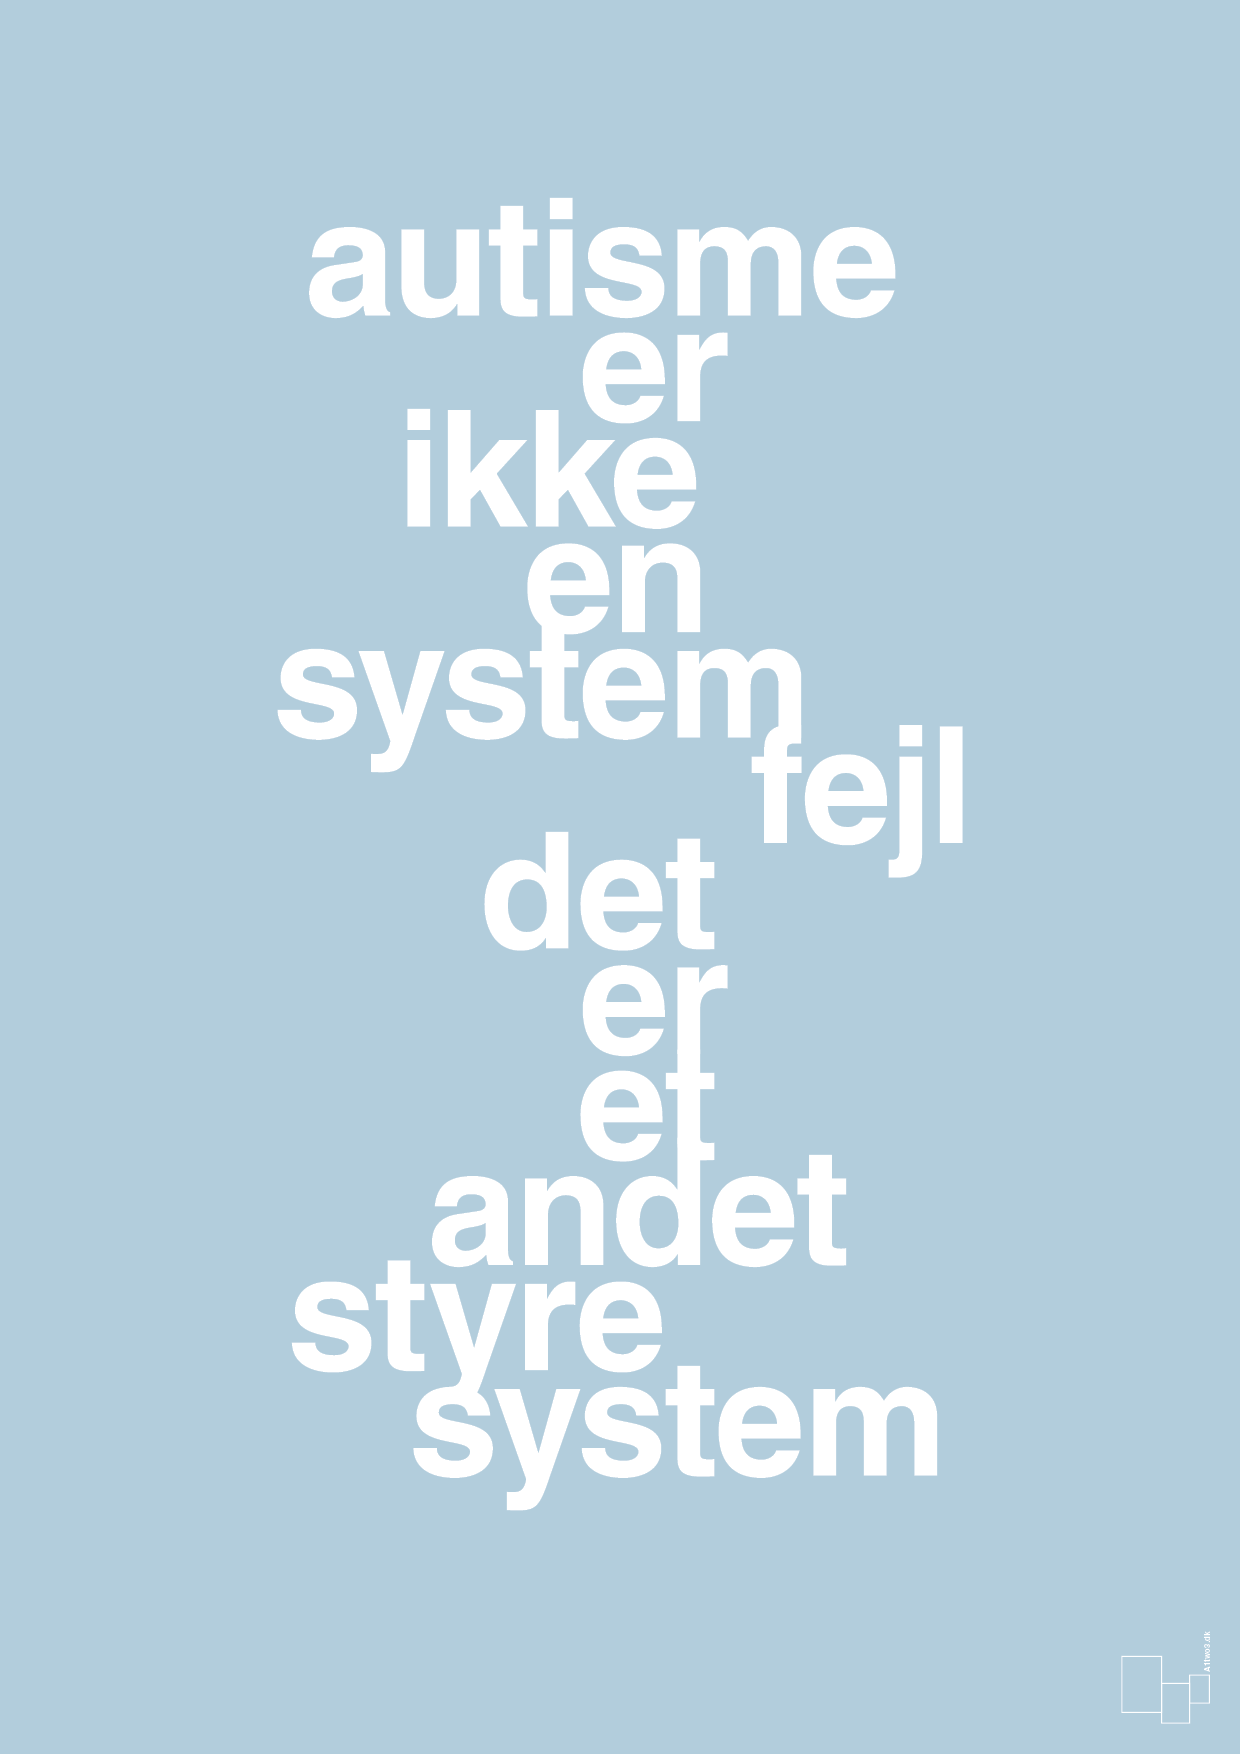 autisme er ikke en systemfejl - Plakat med Samfund i Heavenly Blue